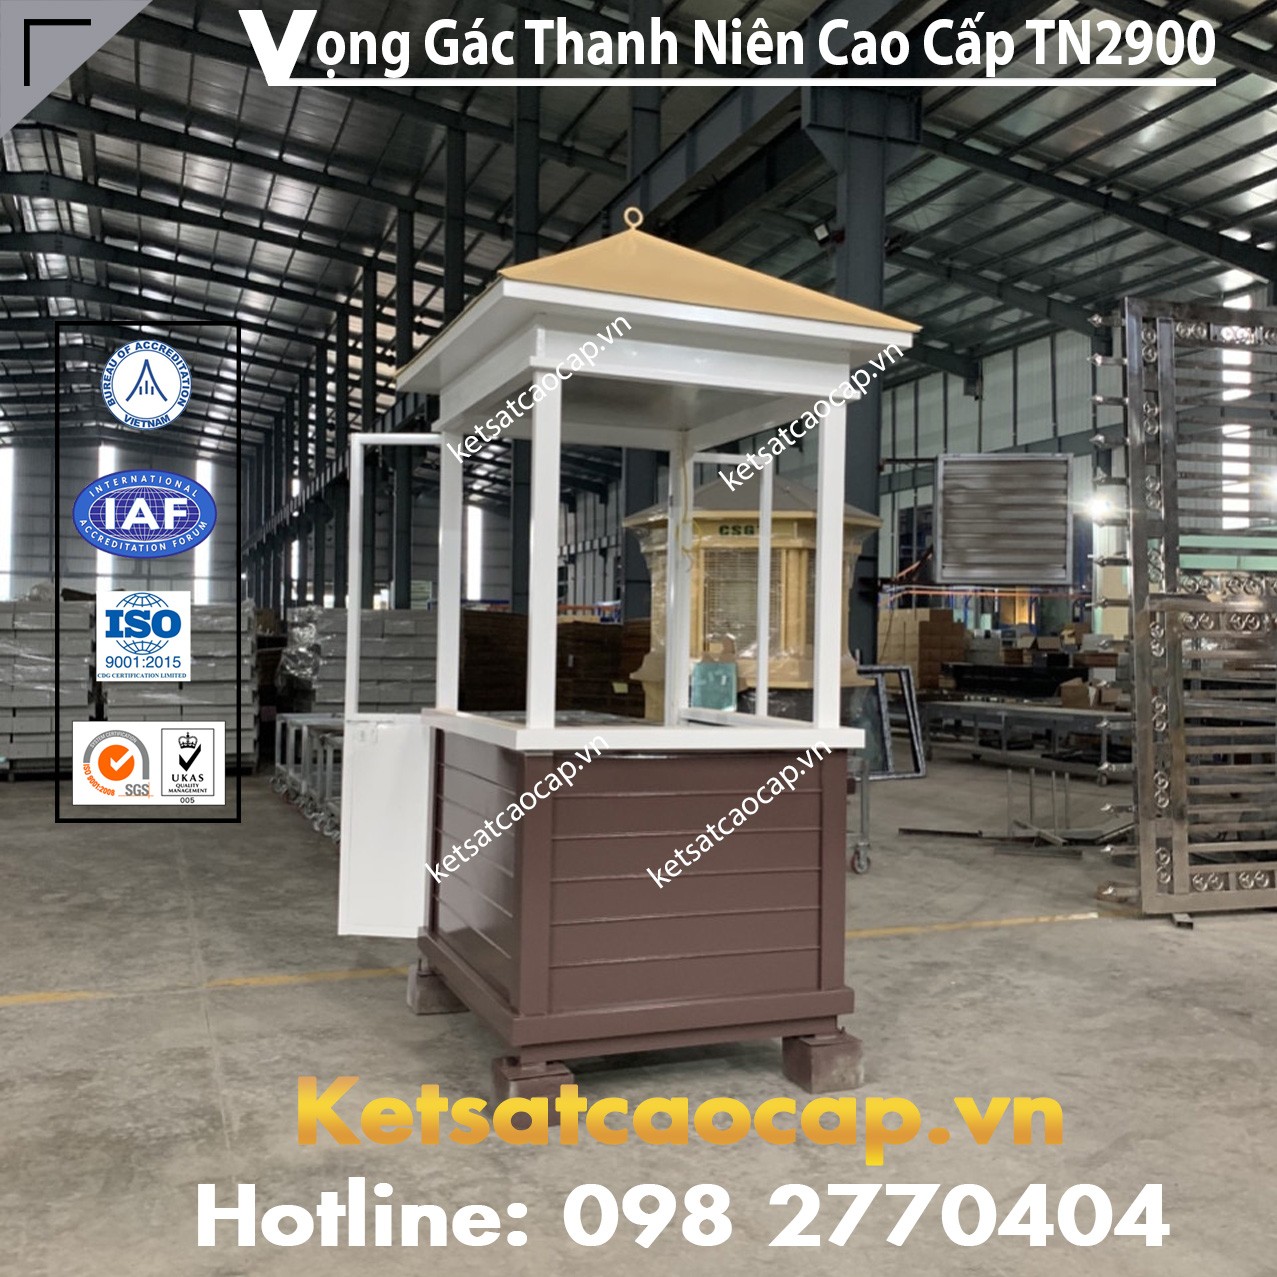 Vọng Gác Thanh Niên TN2400 Sang Trọng, An Toàn